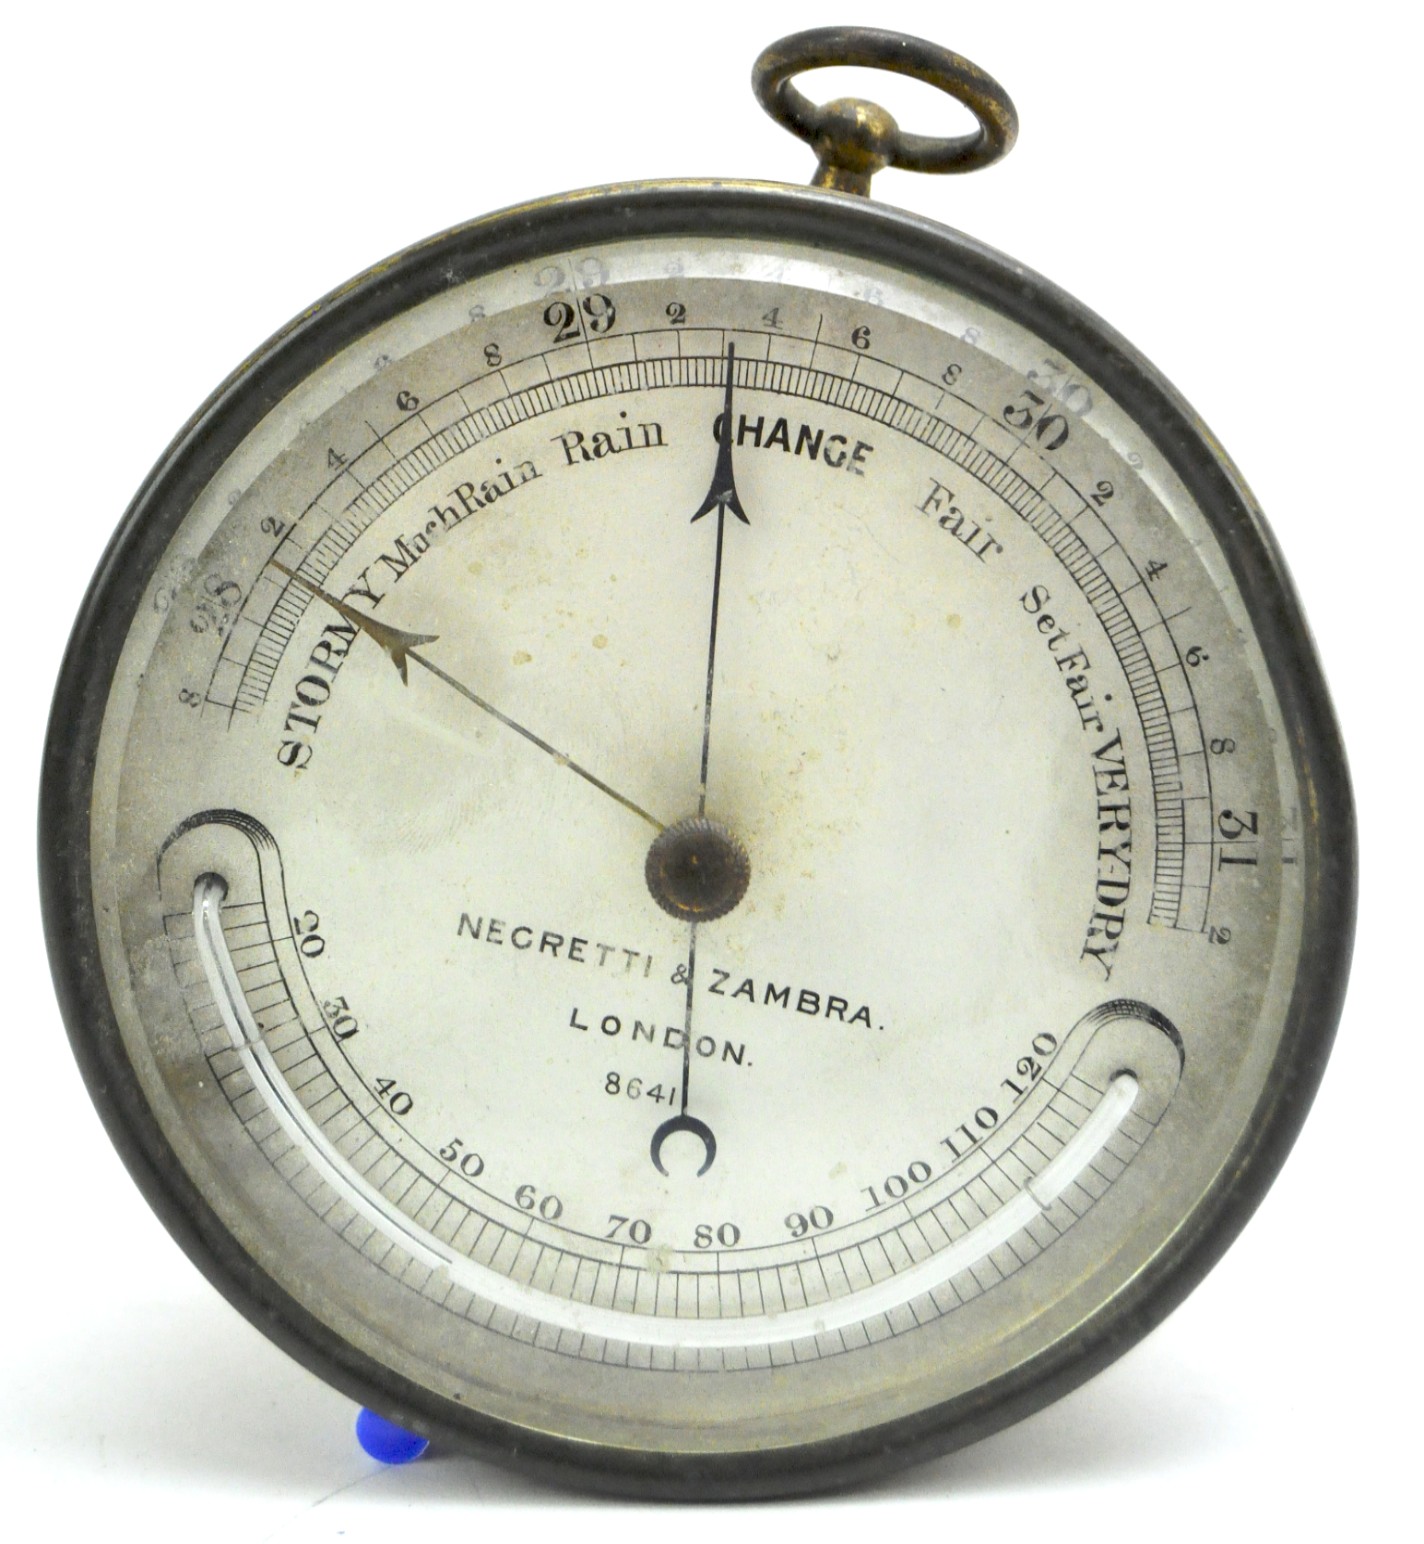 A Negretti & Zambra barometer,